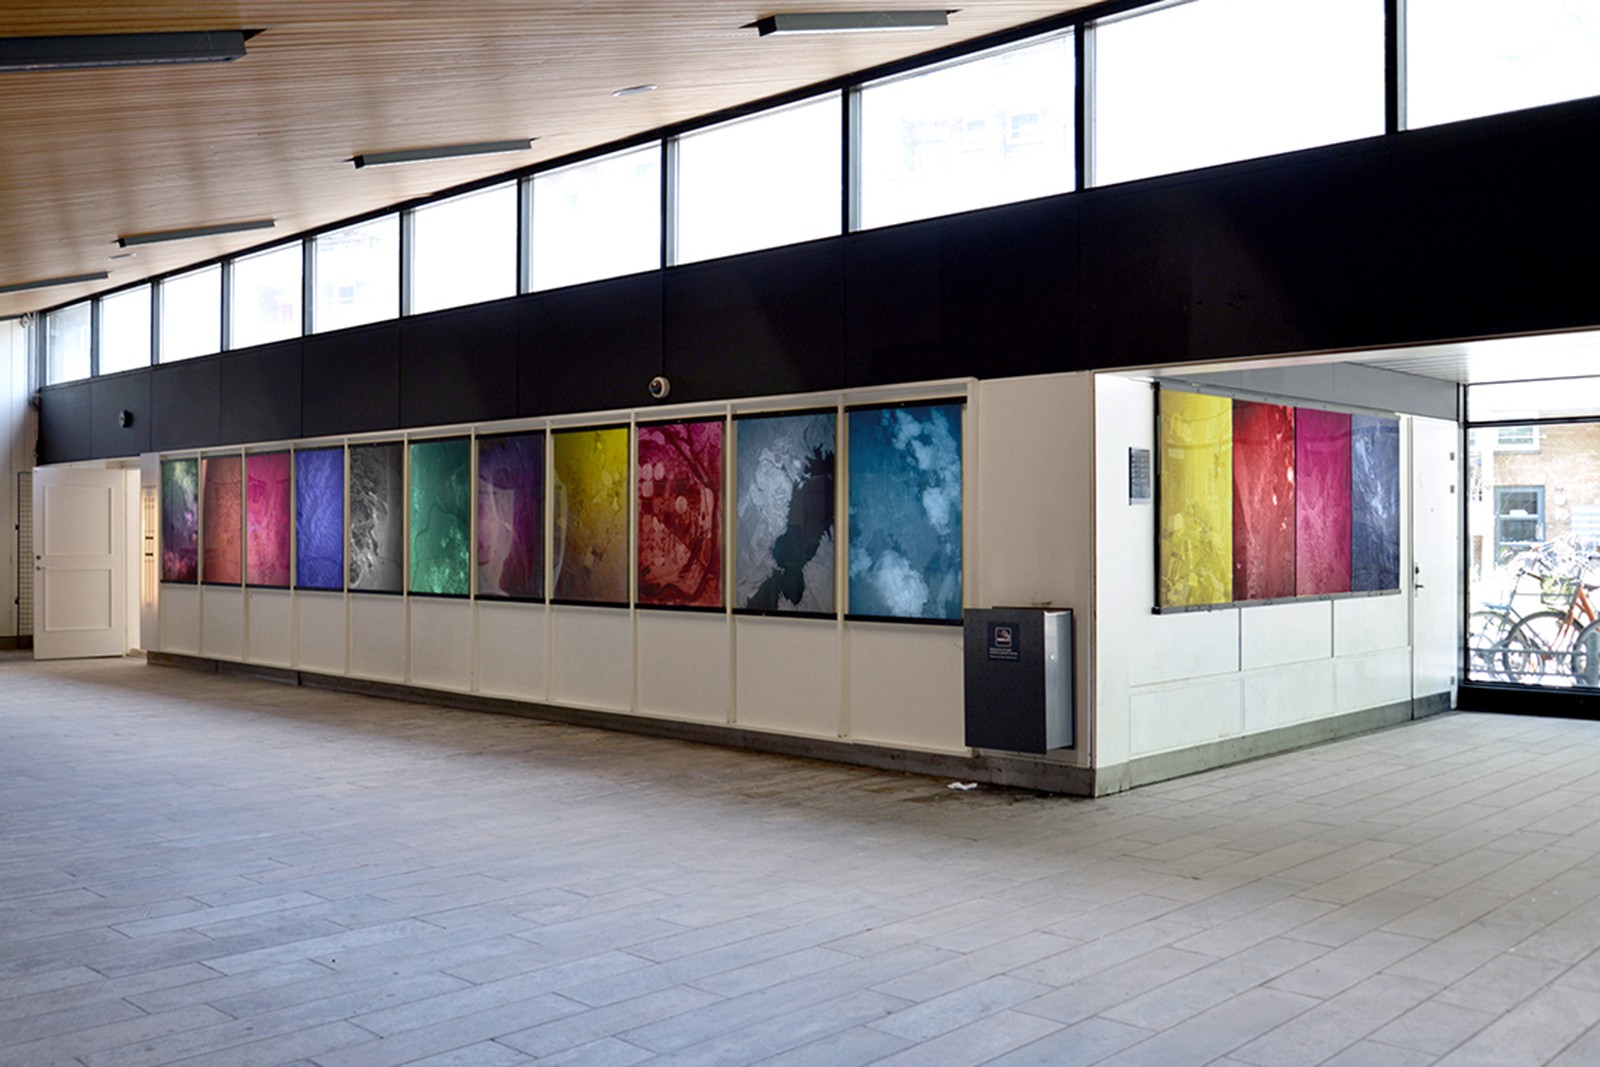 Landet ligger åbent på Sydhavn Station</br>Tanya Busses værker i ventesalen udenfor udstillingsstedet Sydhavn Station. </br>Foto: PR-foto/ Sydhavn Station - Heidi Hove